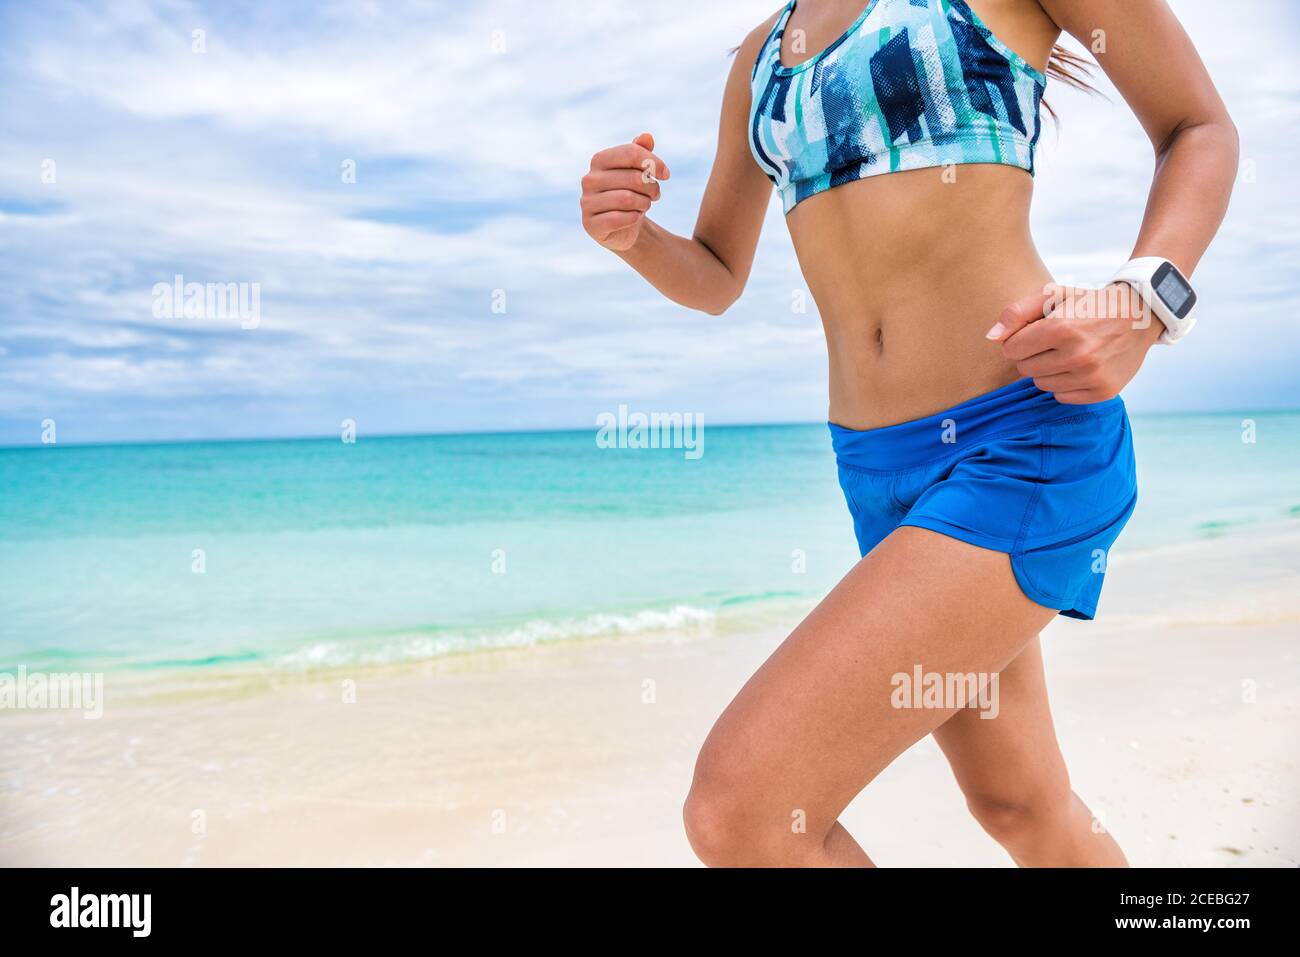 Fitness sport Smart Watch tecnologia indossabile smartwatch runner girl allenamento cardio all'esterno sulla spiaggia. Allenamento donna running. Foto Stock